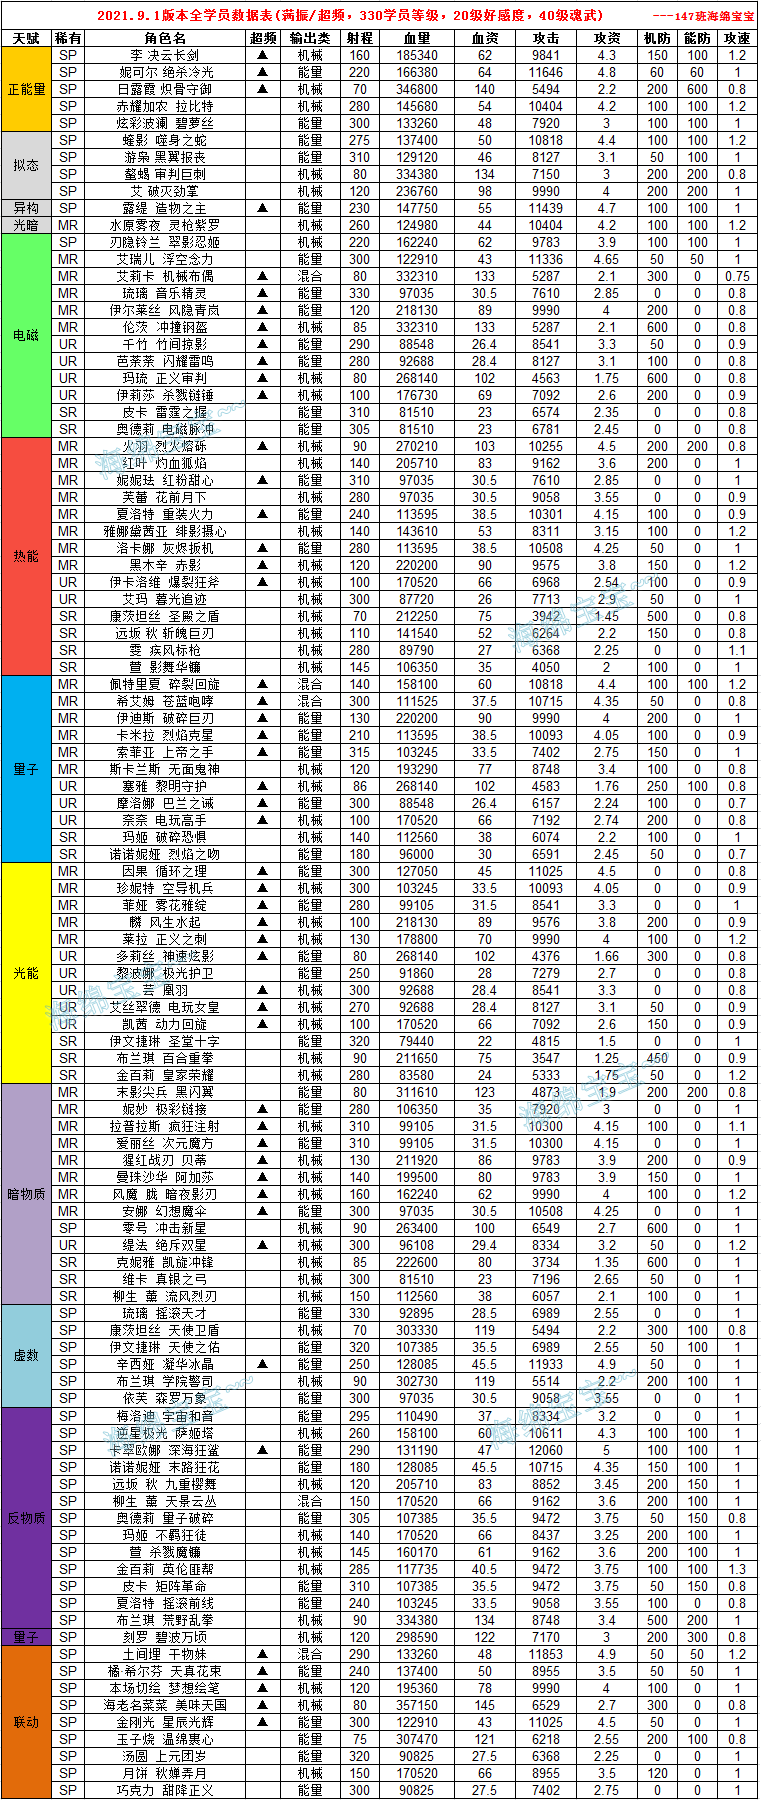 【魂器学院】全角色数据&定位&强度表   修订日期：2022.1.27 - 第1张